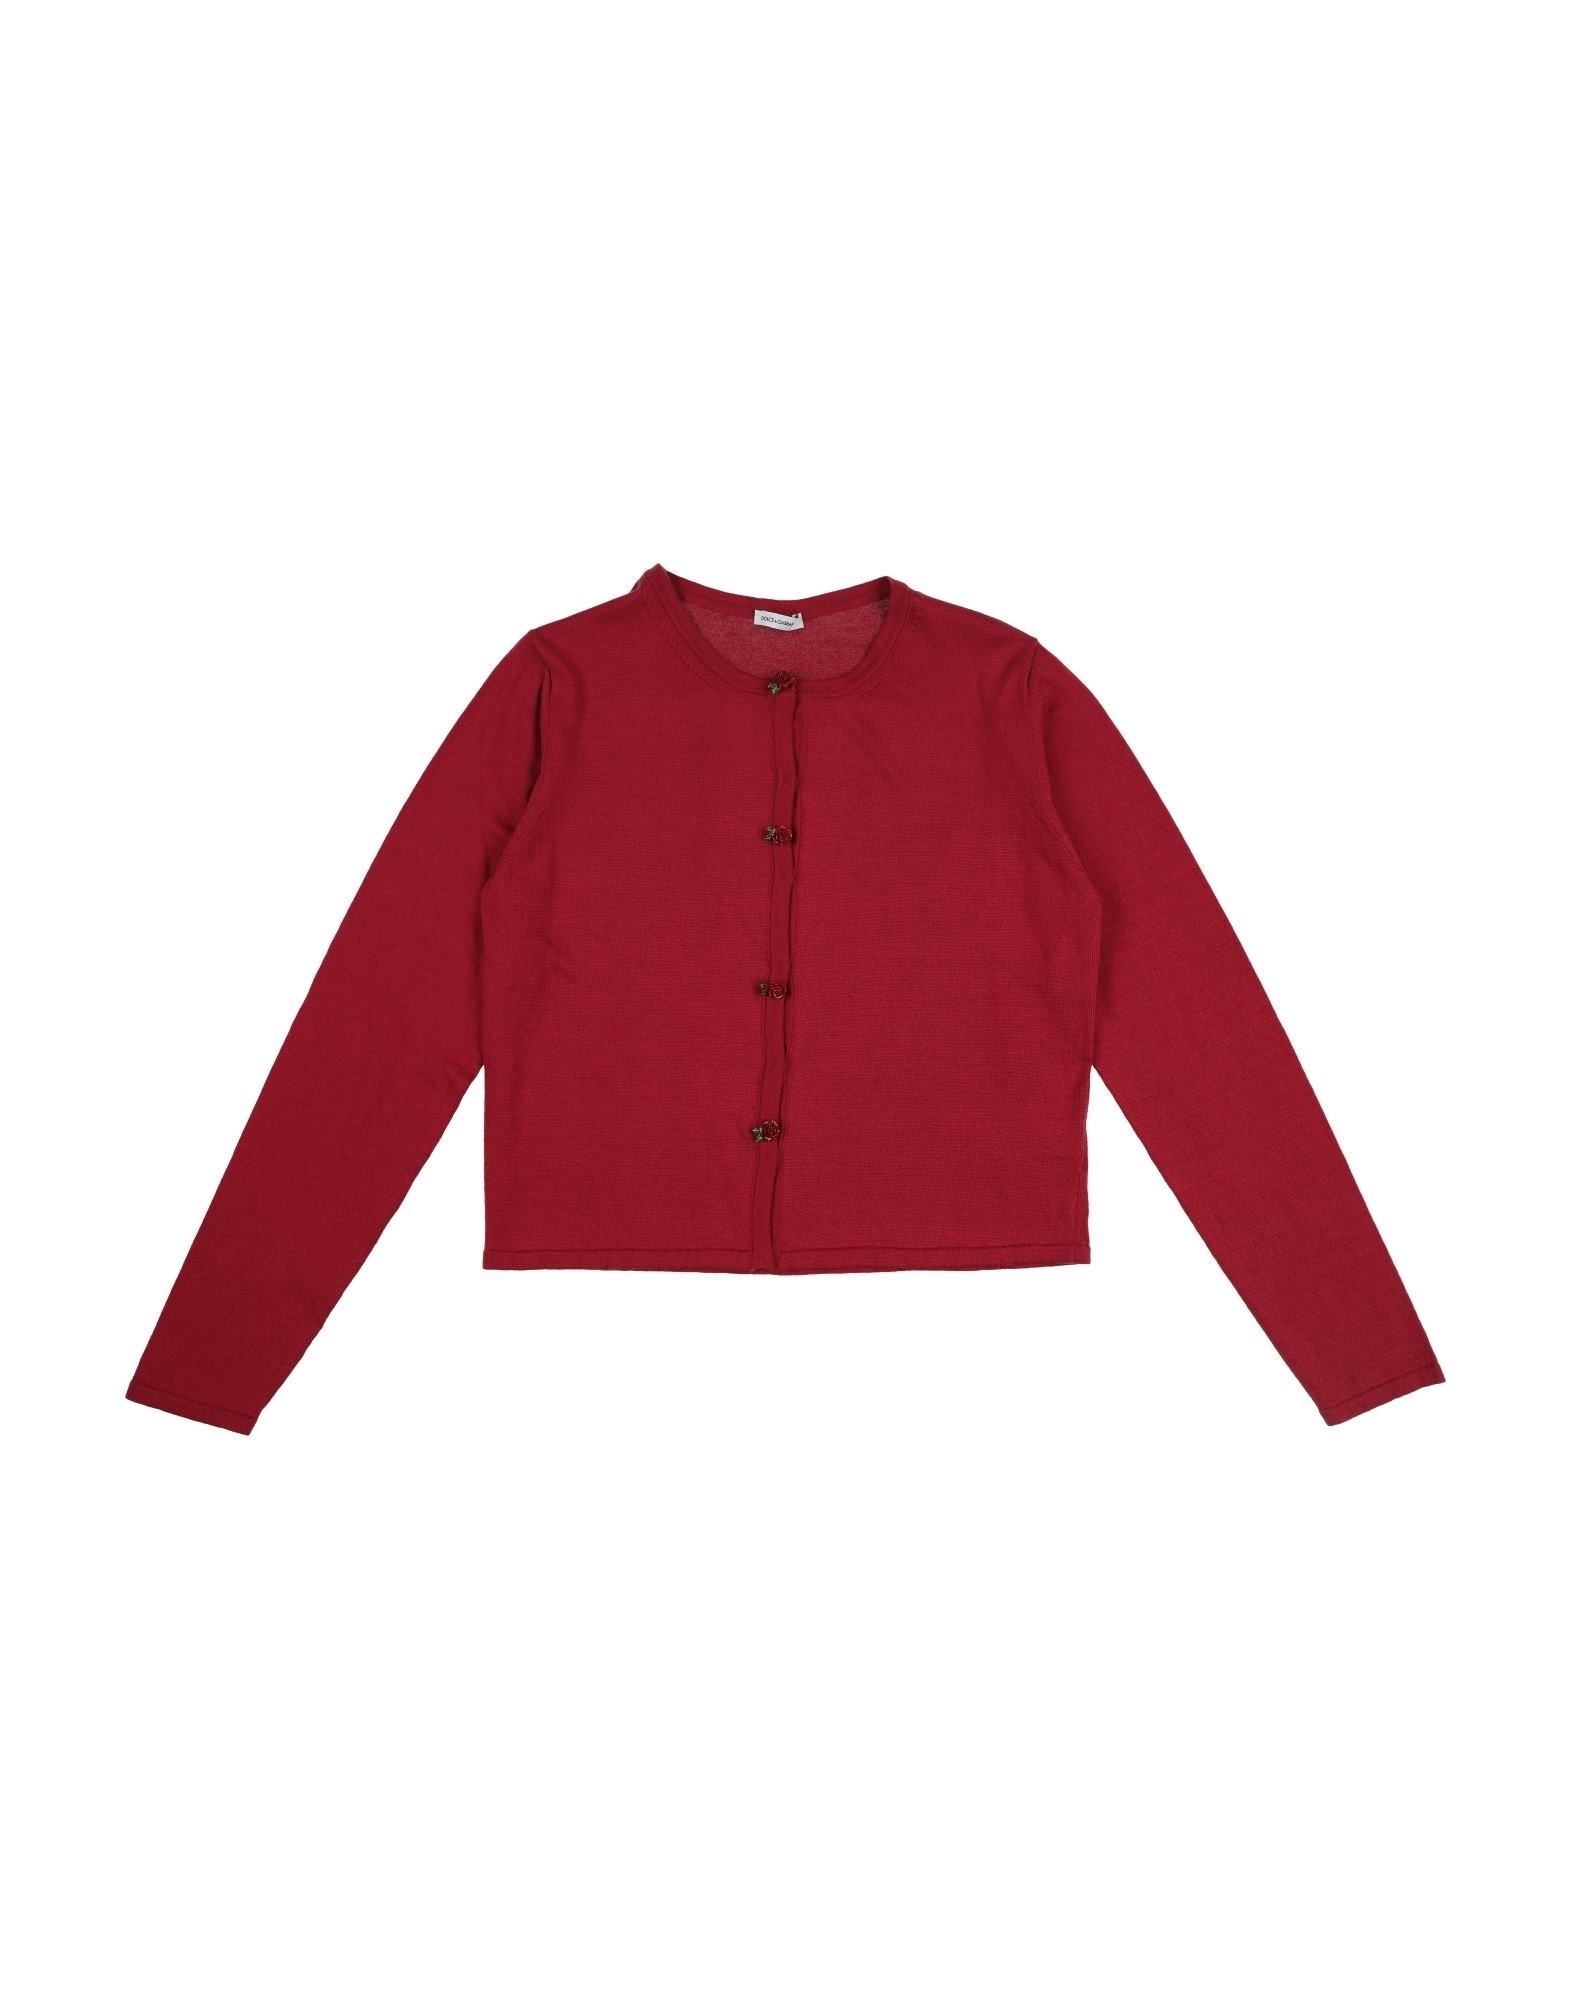 Dolce & Gabbana Kids'  Toddler Girl Cardigan Red Size 6 Cotton